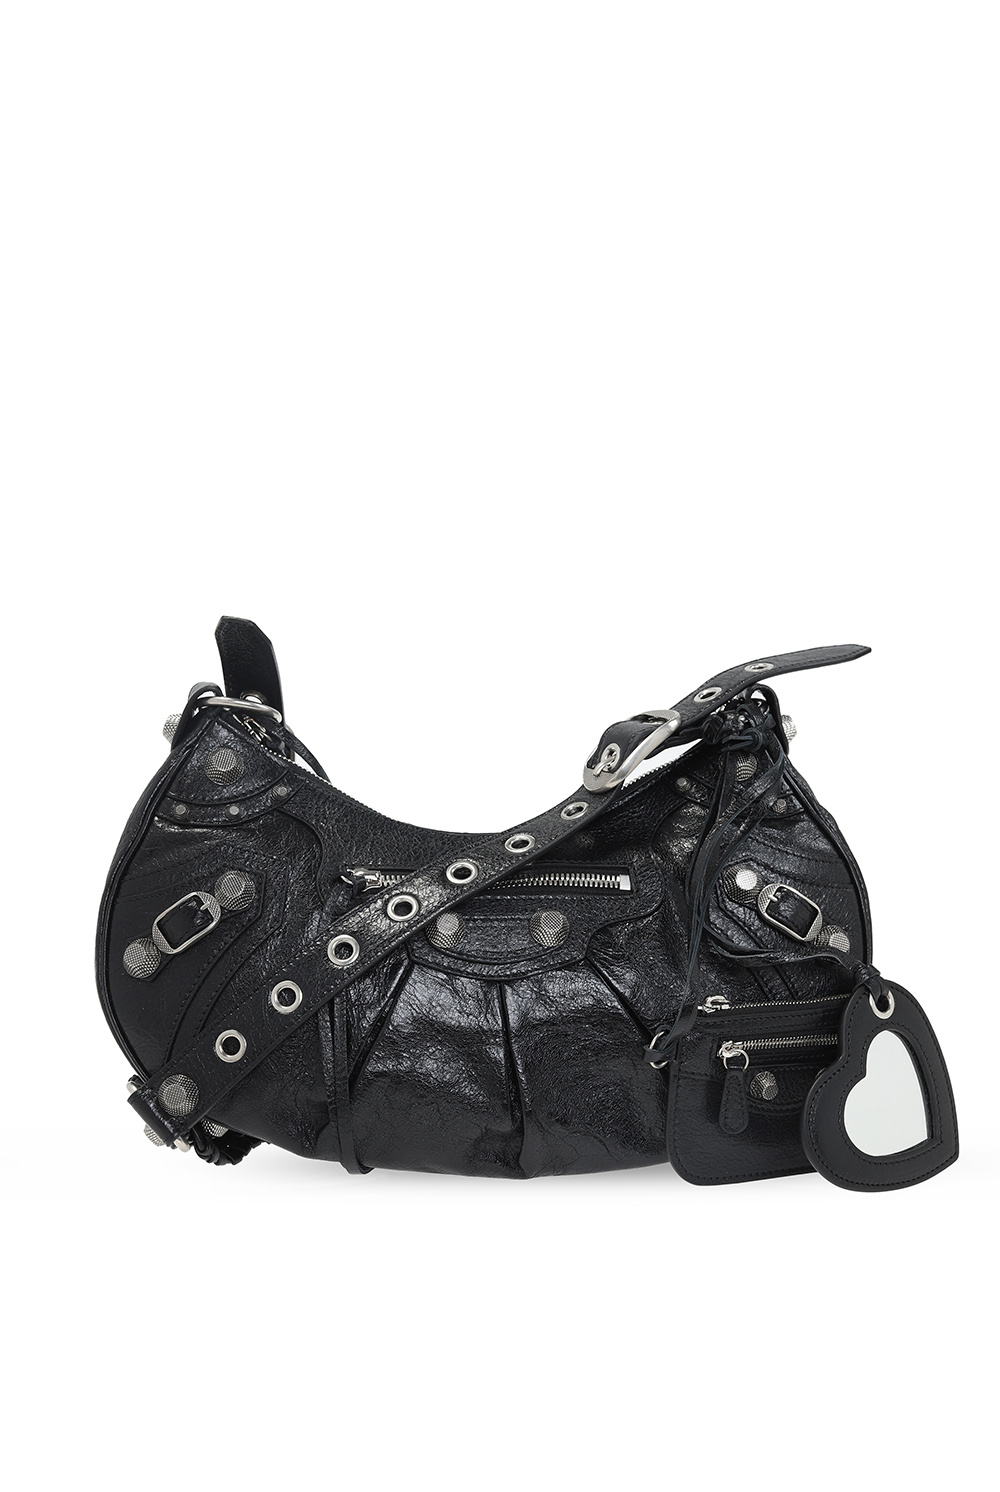 Balenciaga ‘Arena’ shoulder bag